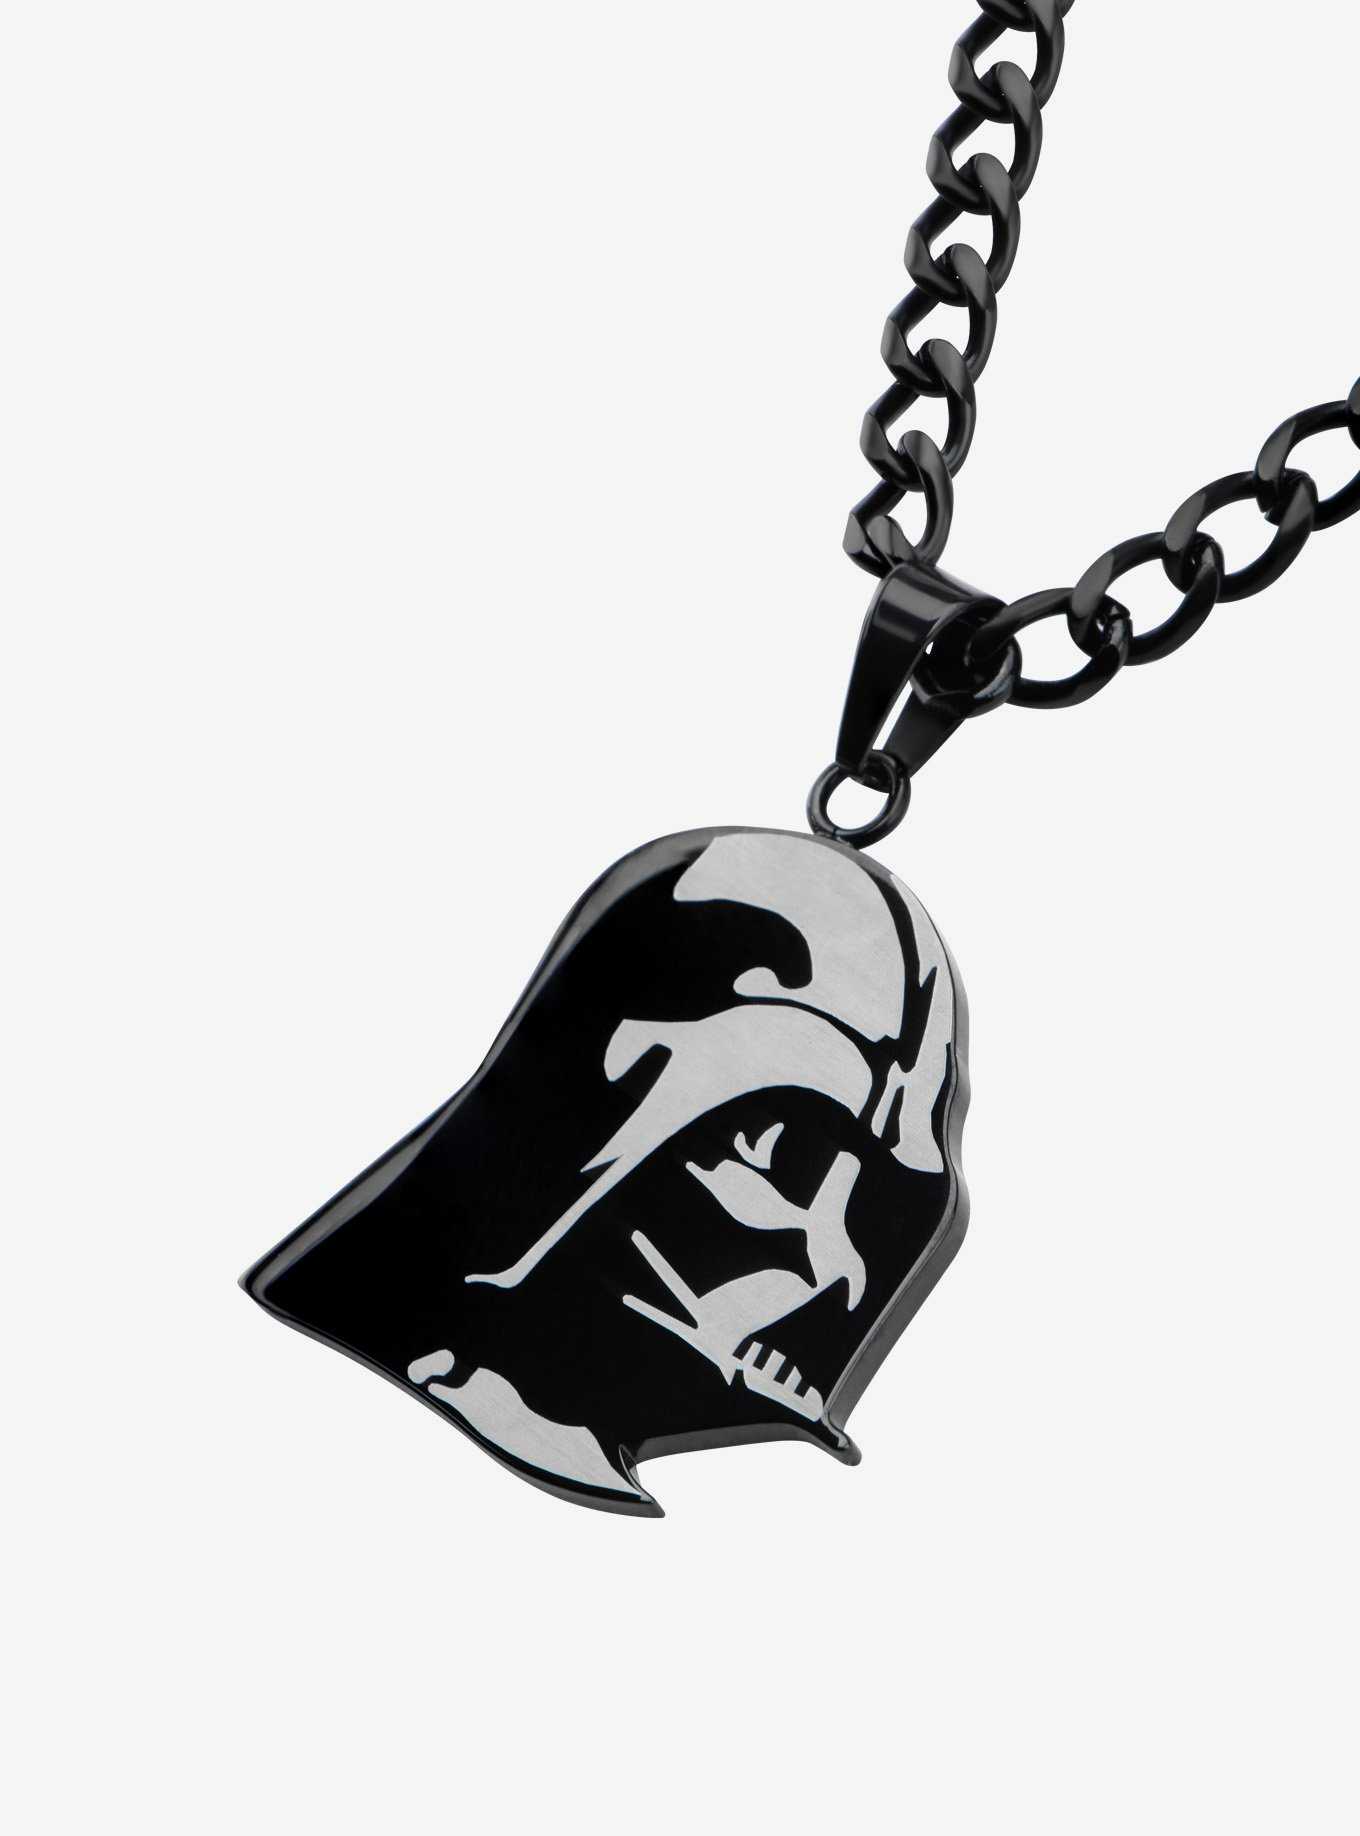 Star Wars Etched Darth Vader Pendant Necklace, , hi-res